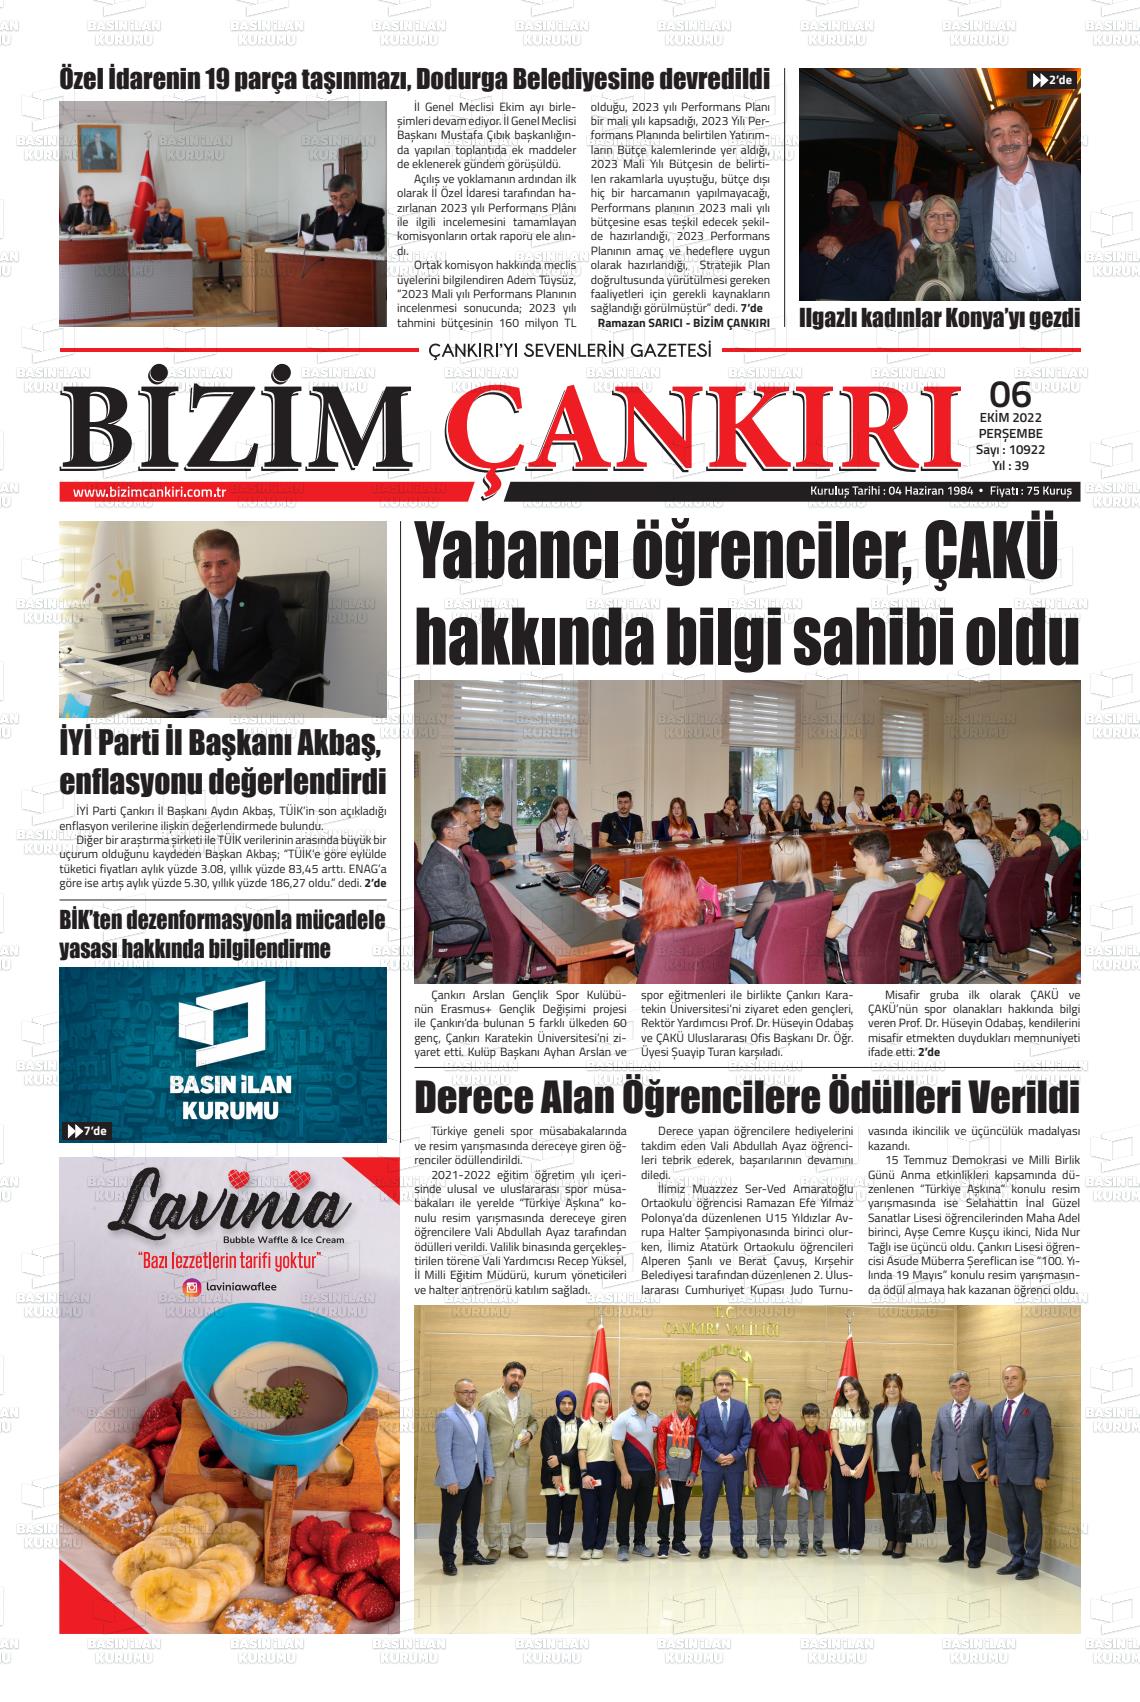 06 Ekim 2022 Bizim Çankırı Gazete Manşeti